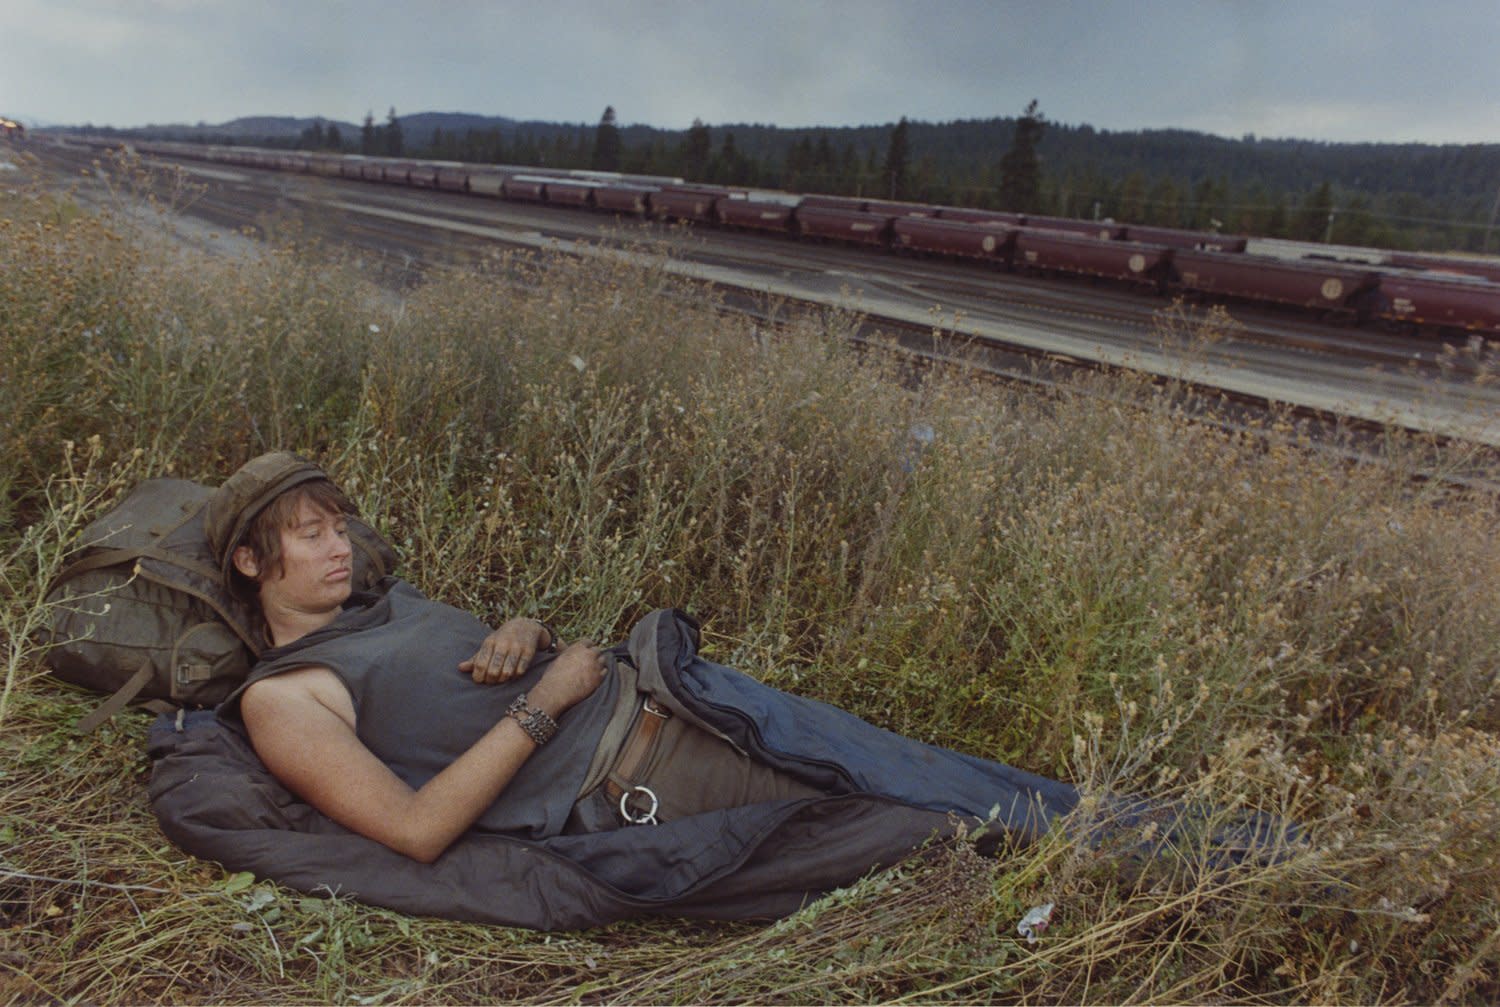 Остановись броди. Майк Броди фотограф. Майк Броди период юношеского расцвета. Парень на железной дороге. Путешествие на товарных поездах.